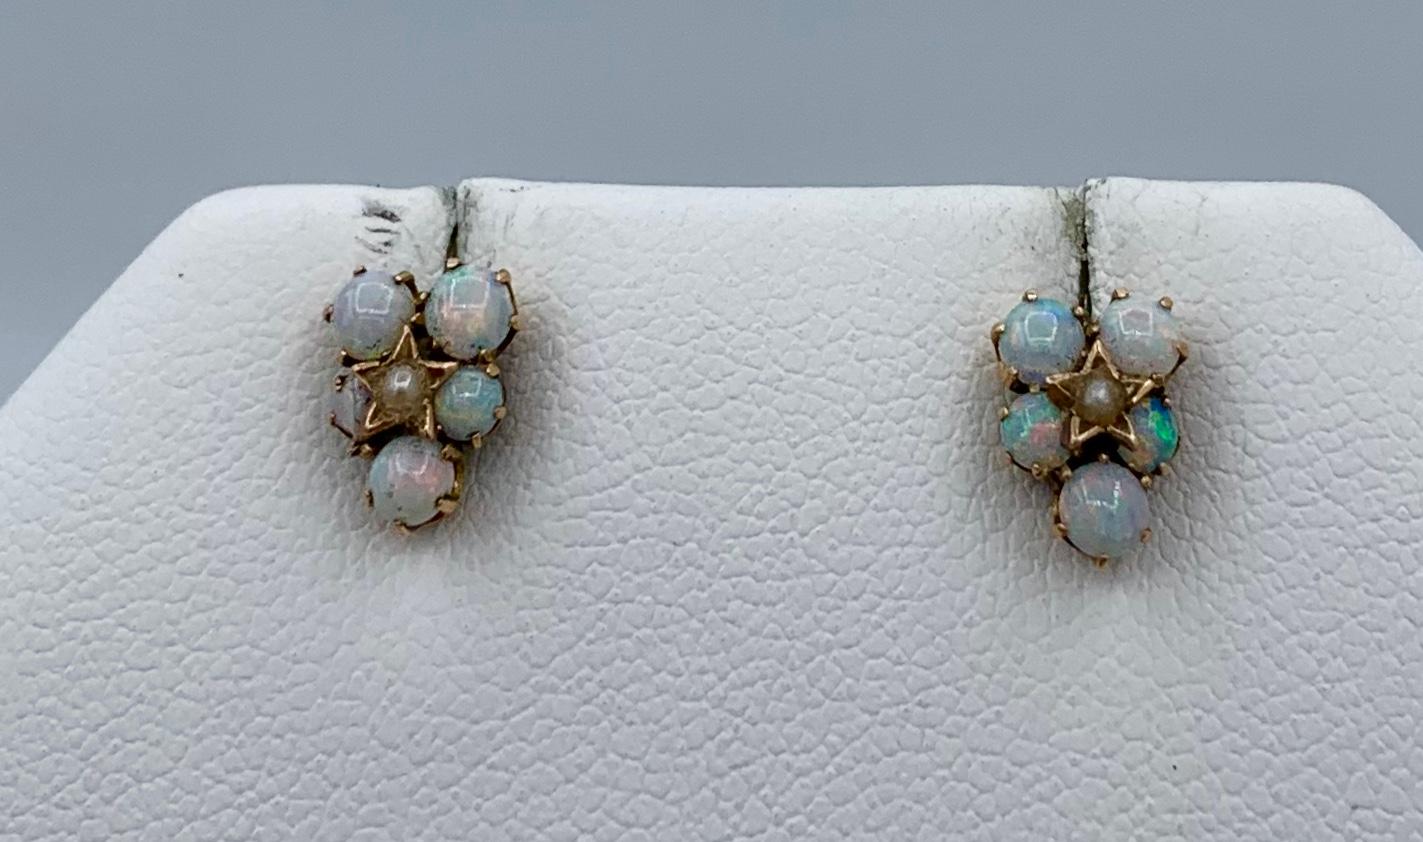 Dies ist eine schöne romantische Paar antike Art Deco Opal Perlen Ohrringe mit 10 spektakulären runden Opal Cabochons von großer Schönheit durch eine Perle in einem Stern-Motiv Fassung in 14 Karat Gold akzentuiert.  Die Farben dieser Opale sind